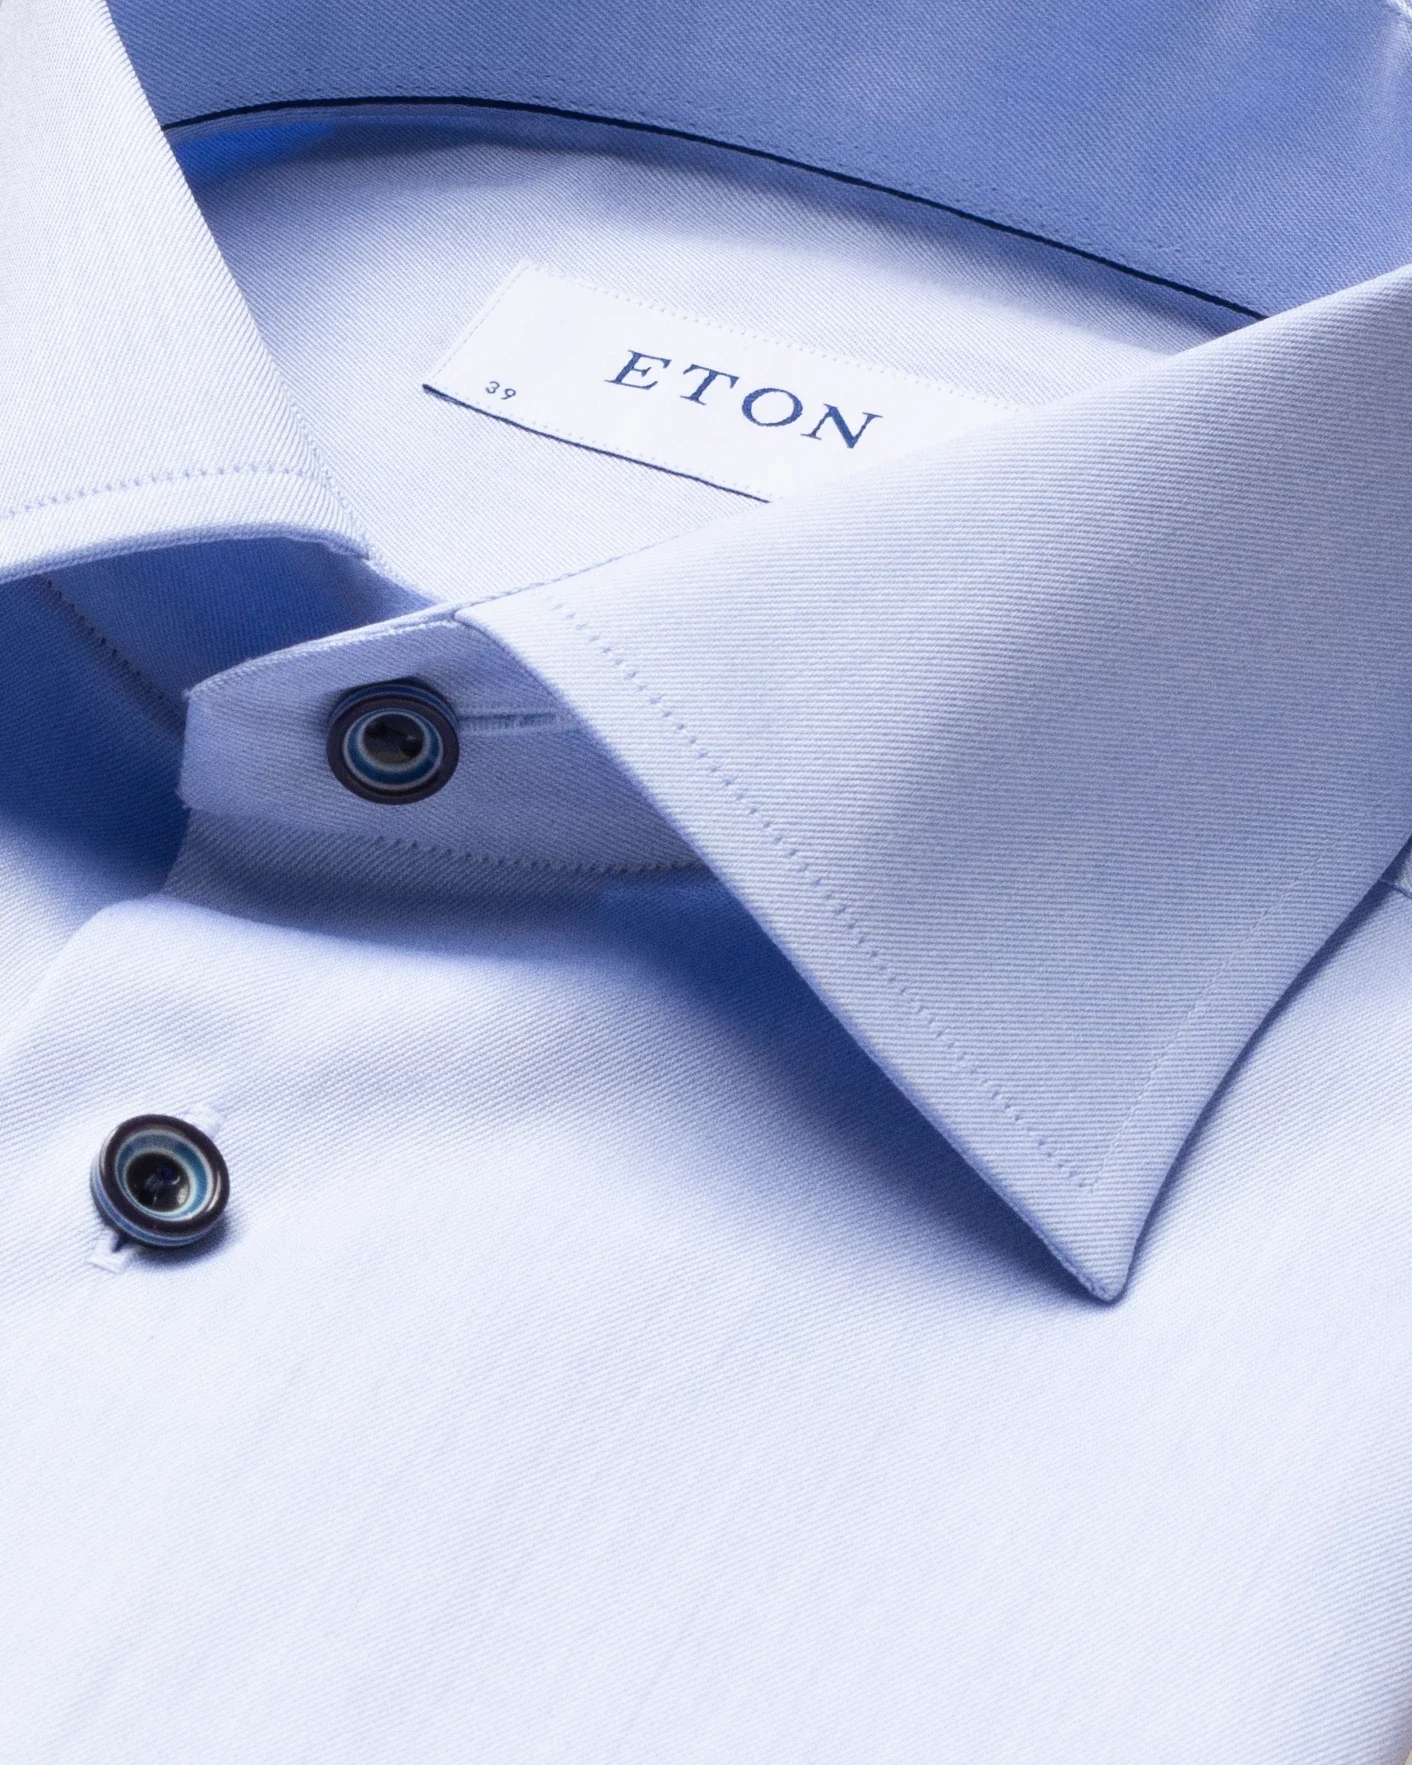 Eton - blue twill shirt navy buttons